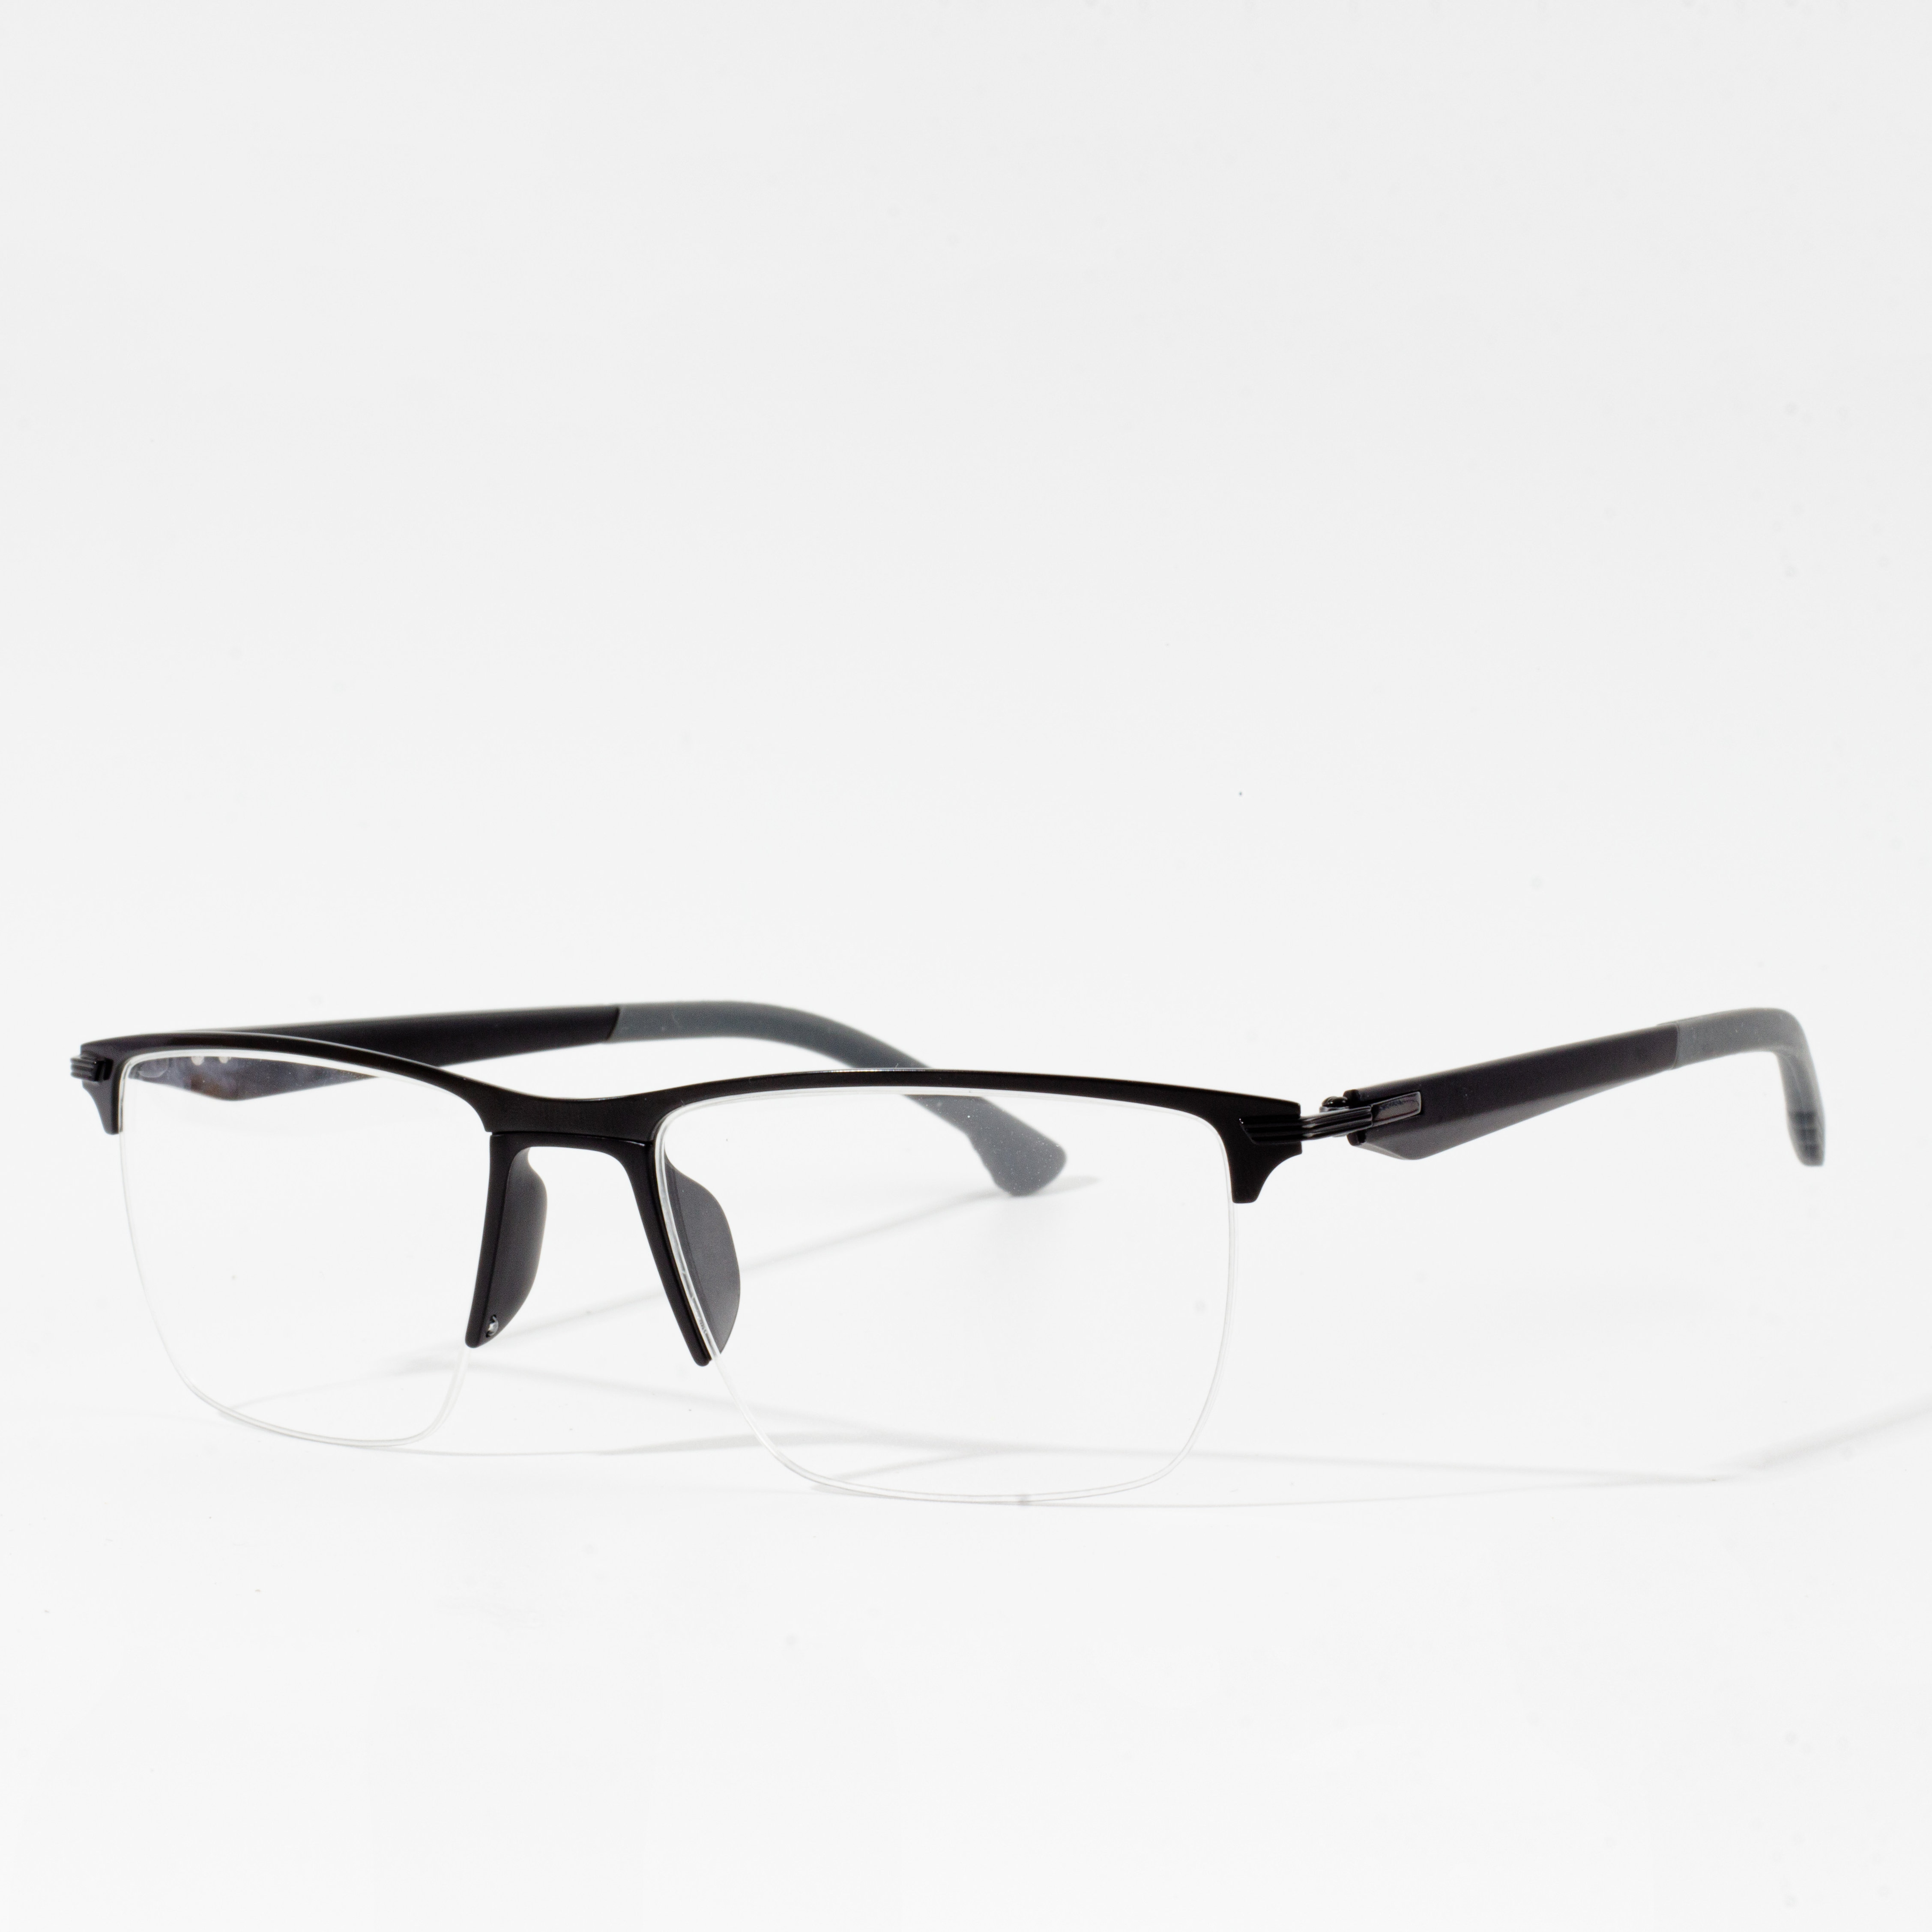 Muntura d'ulleres quadrades metàl·liques